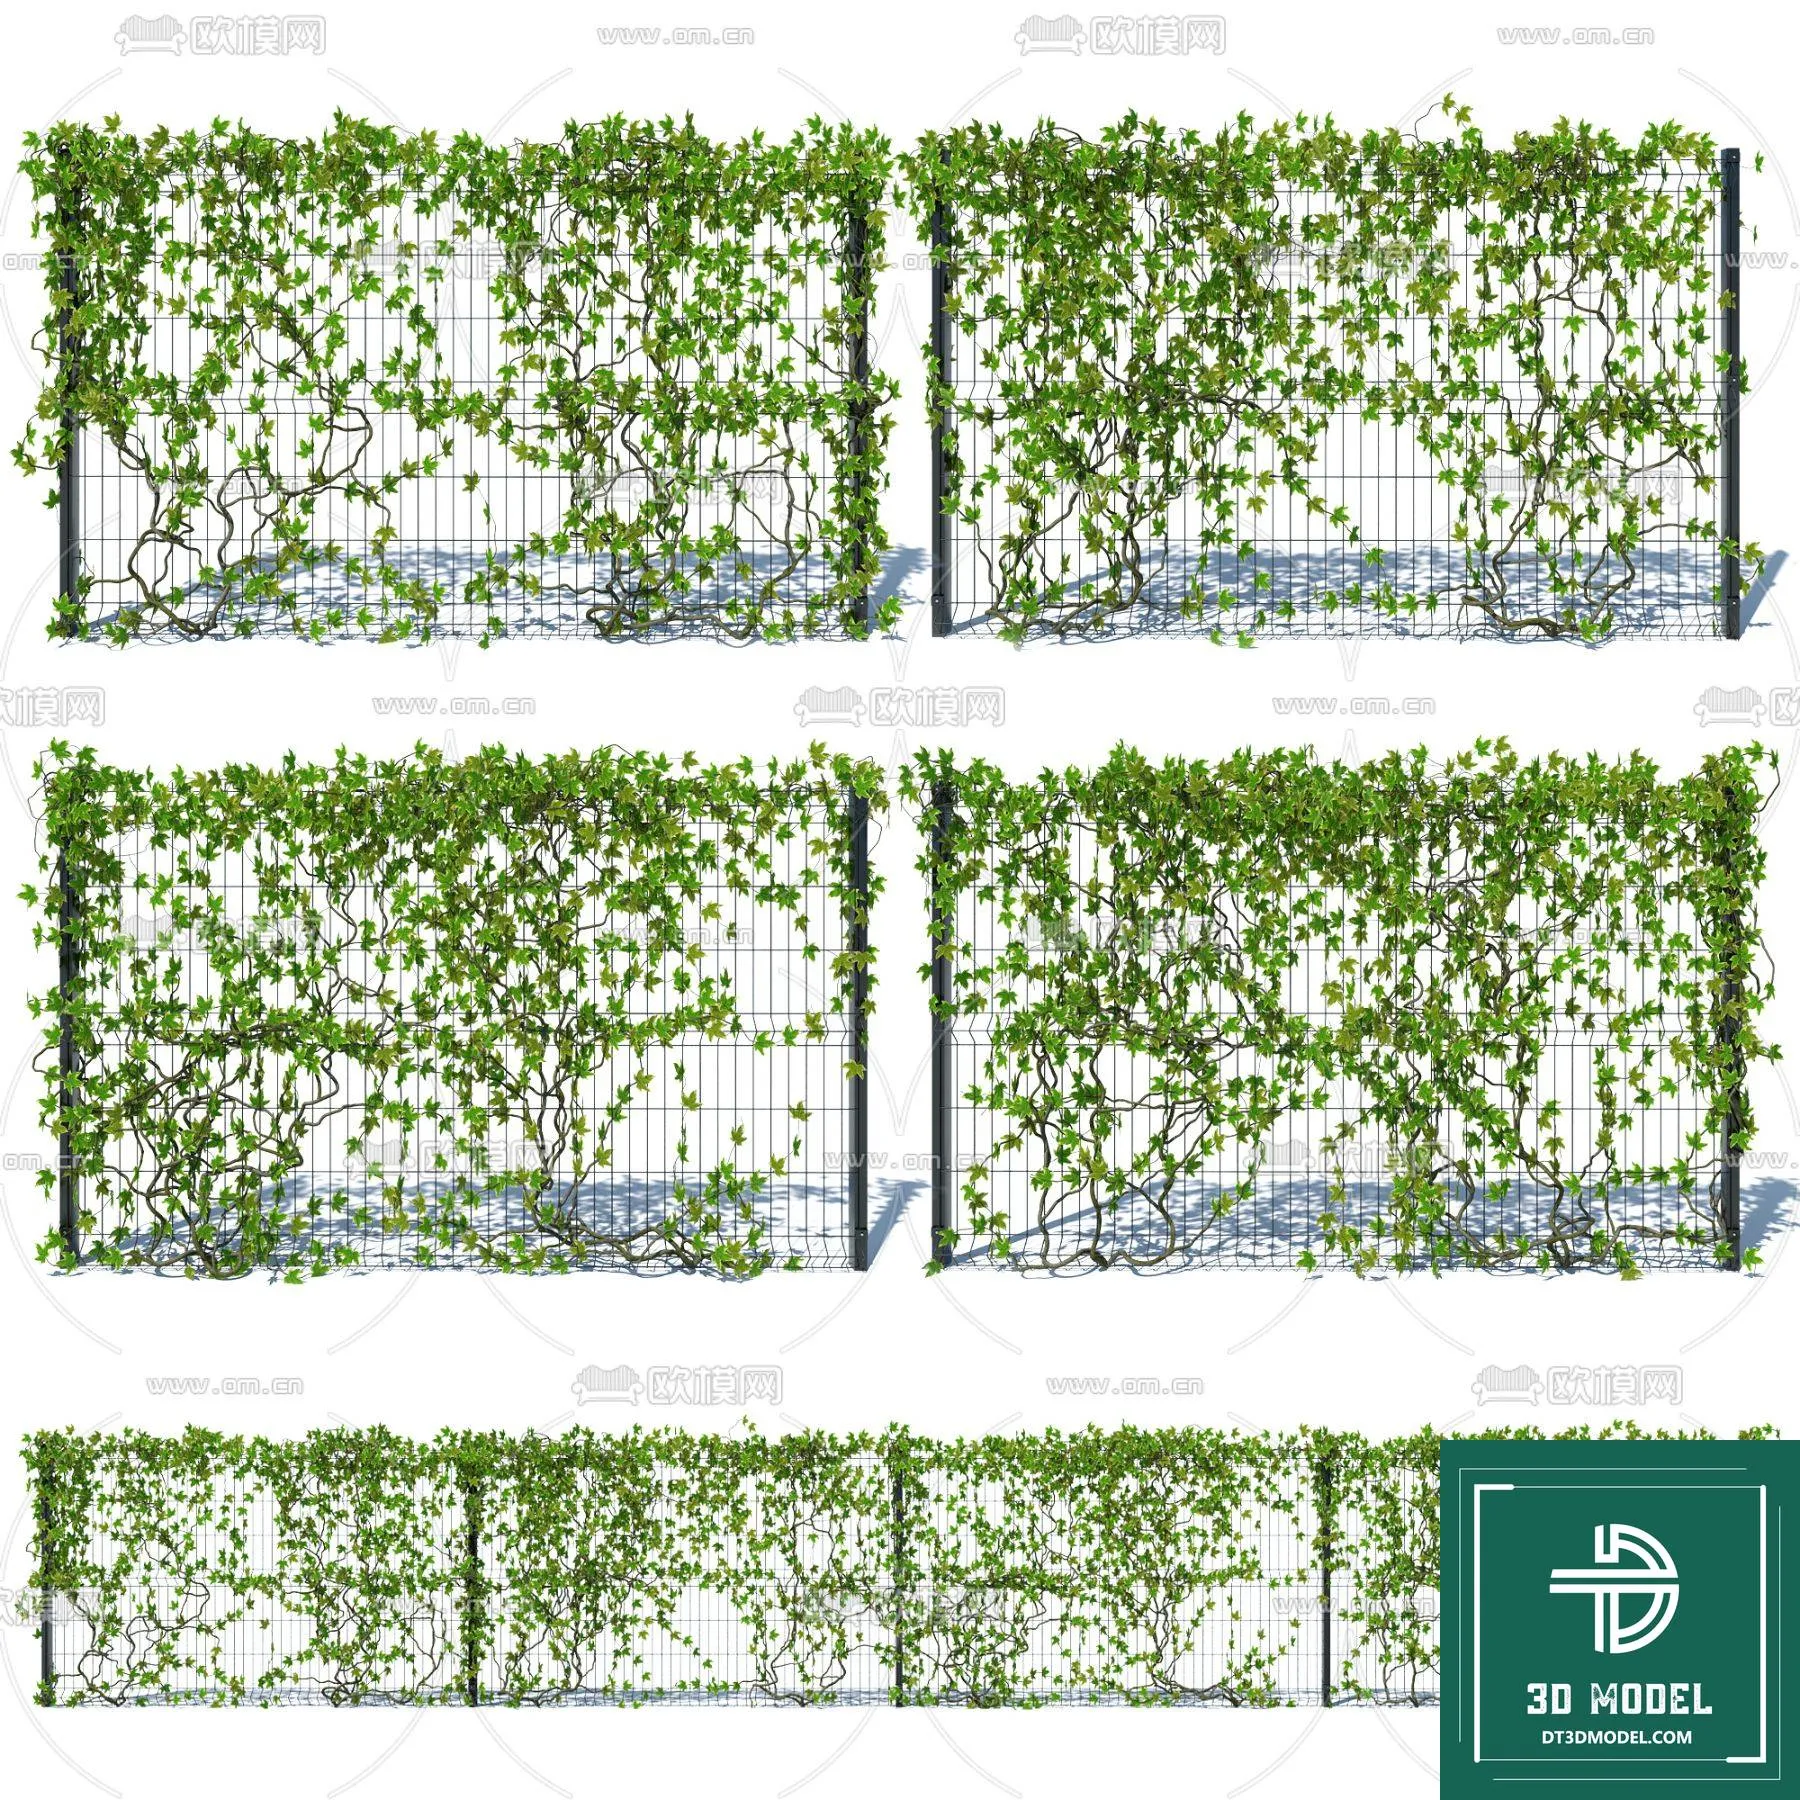 VERTICAL GARDEN – FITOWALL PLANT 3D MODEL – 161